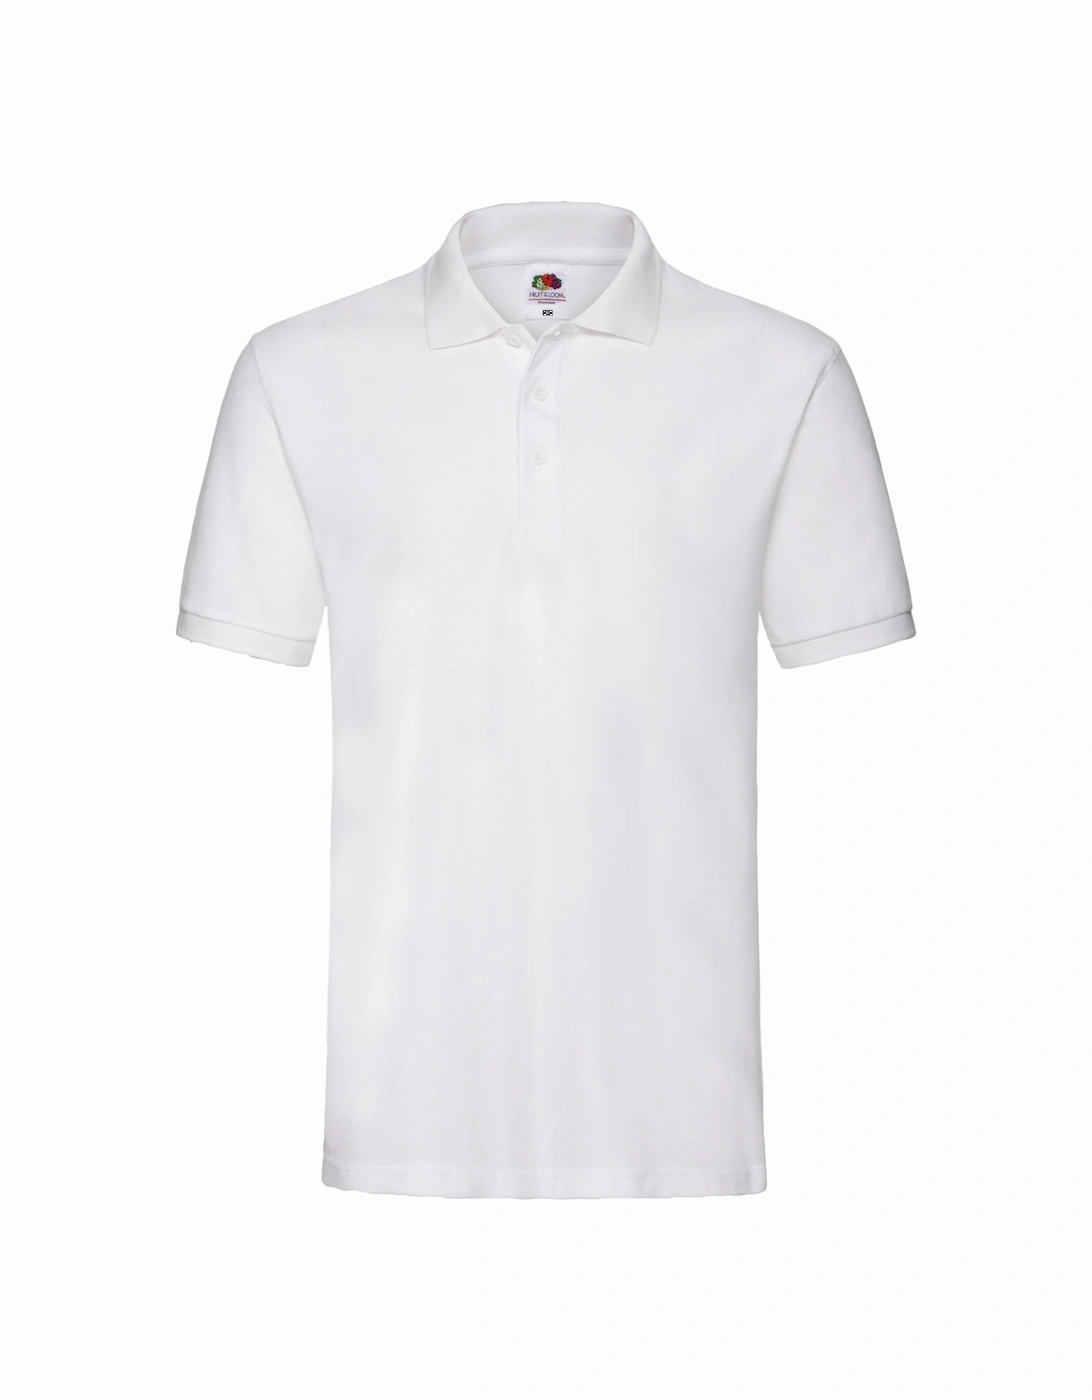 Unisex Adult Premium Cotton Pique Polo Shirt, 4 of 3